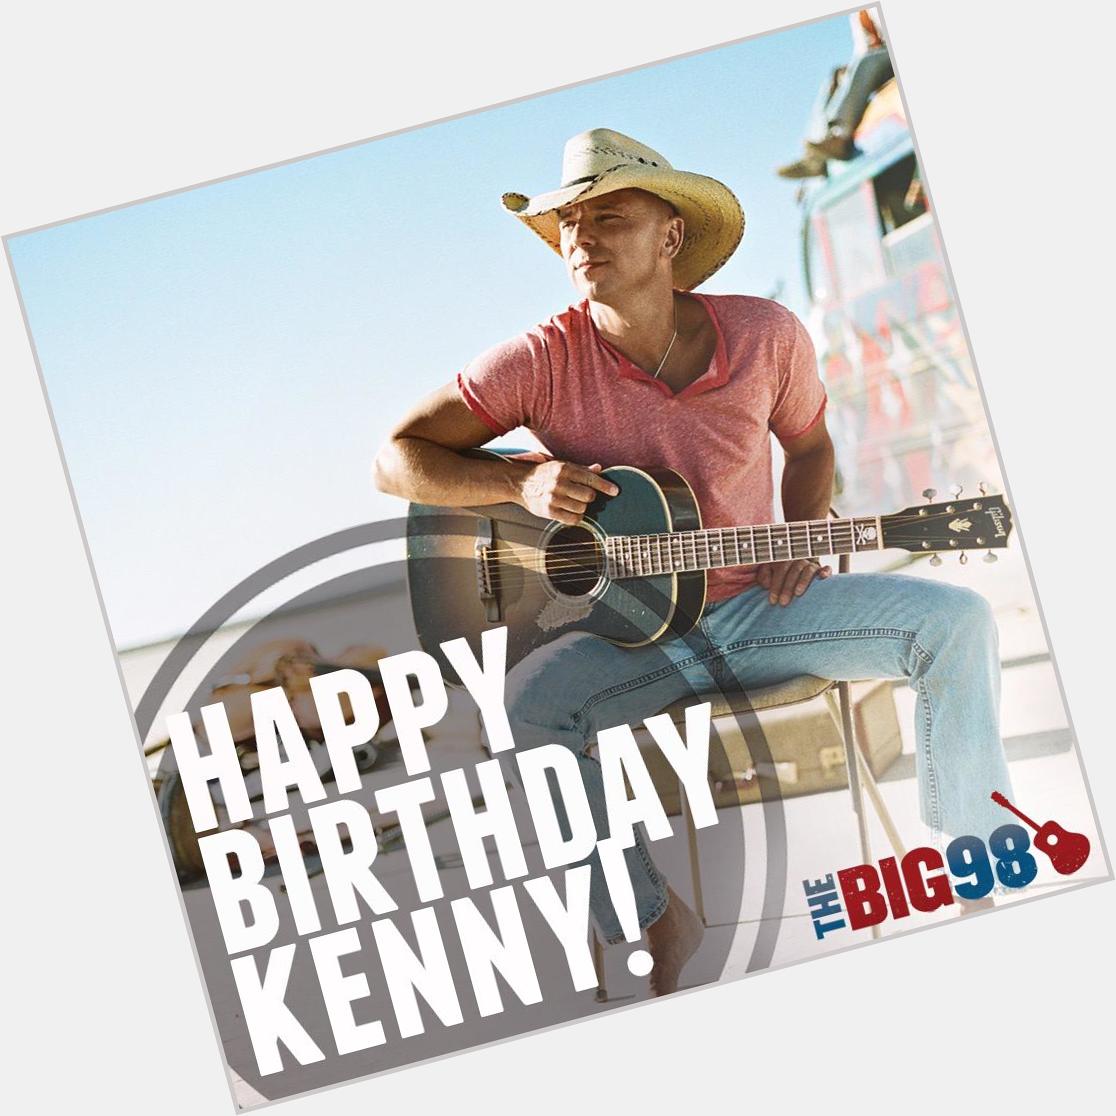 So excited for Kenny Chesney tonight at Bridgestone!! Happy Birthday Kenny! 